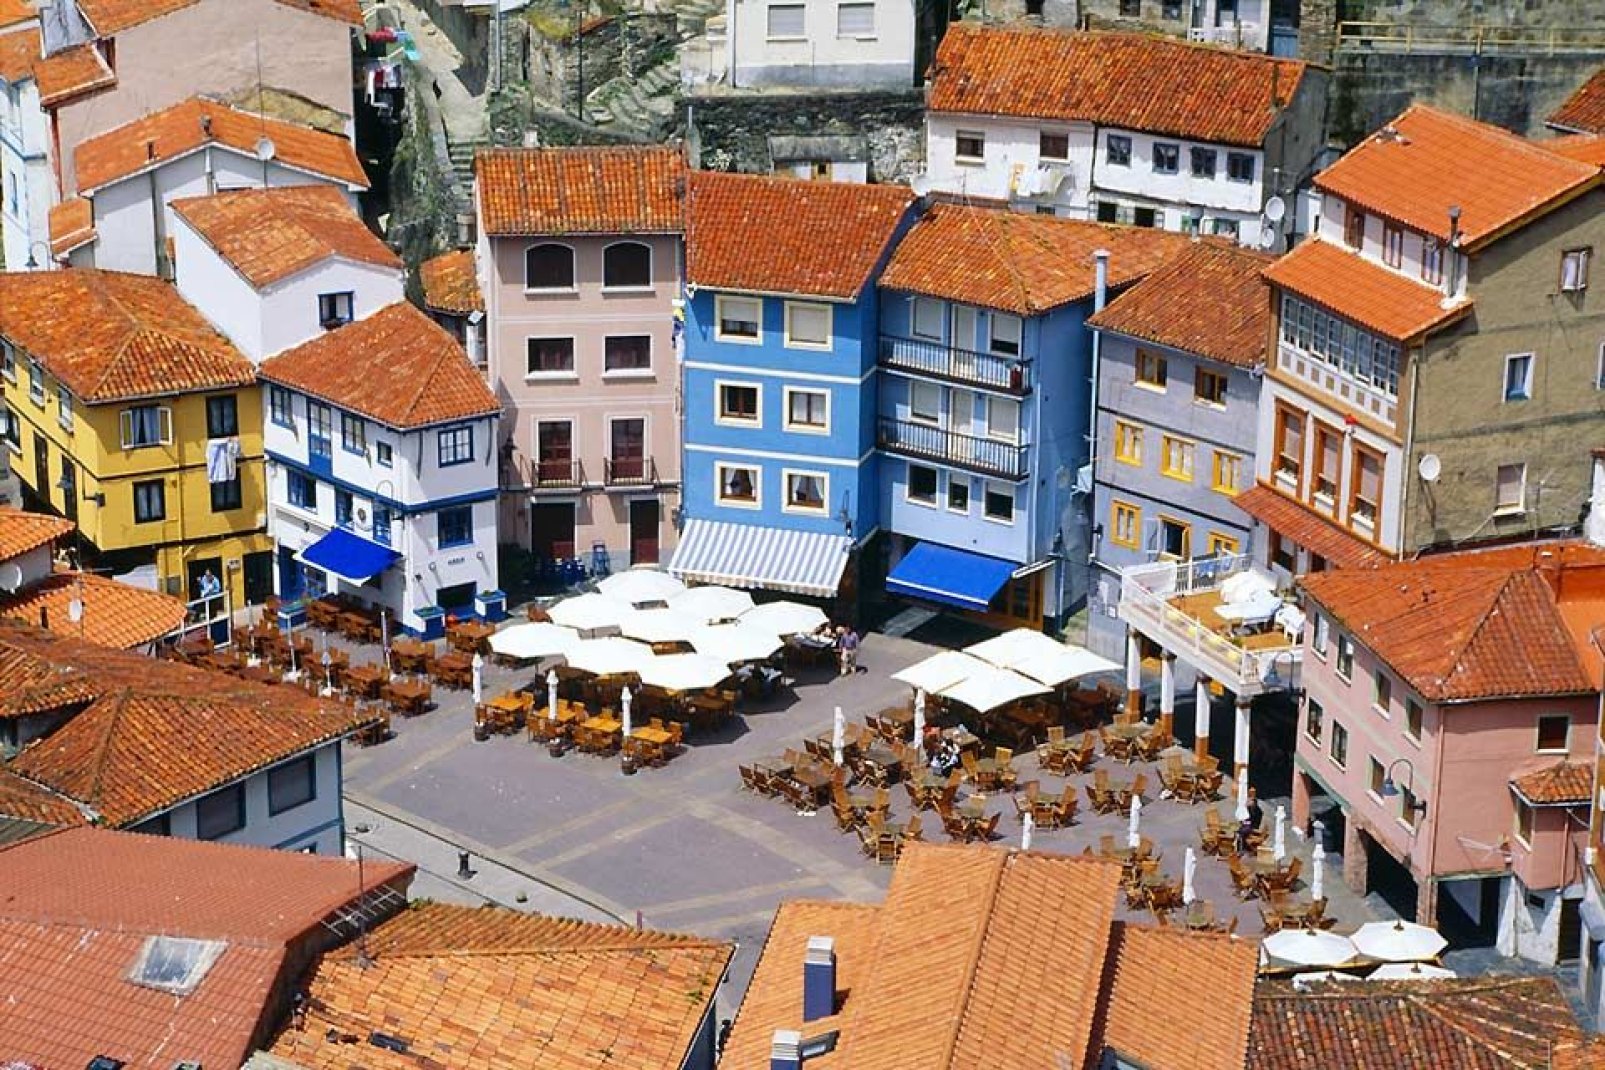 Cudillero è una città molto visitata in estate. È nota per essere uno dei luoghi più turistici delle Asturie.